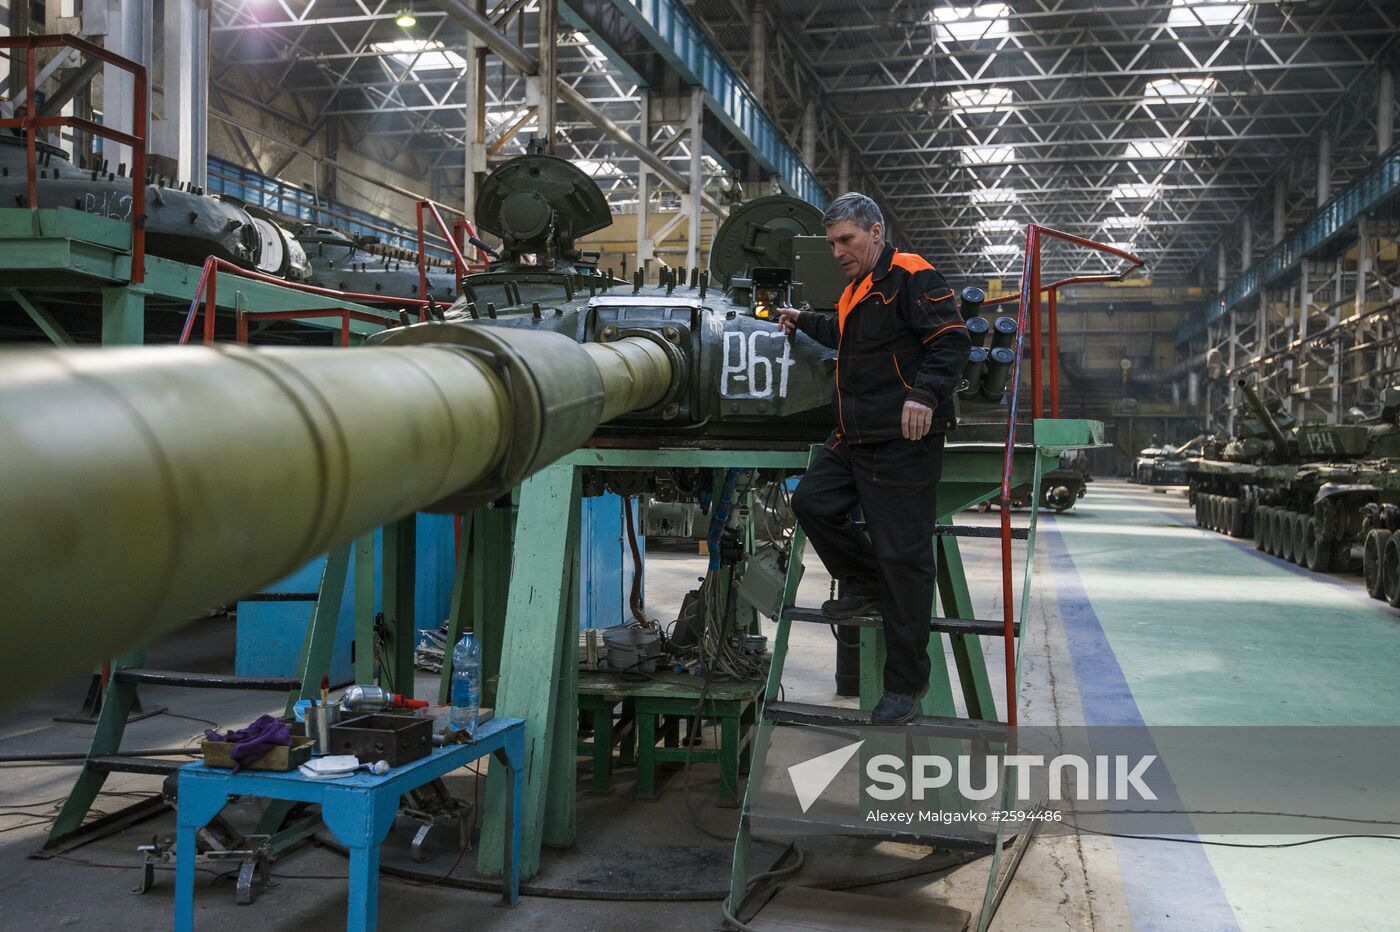 Omsk Transport Mechanical Engineering Plant